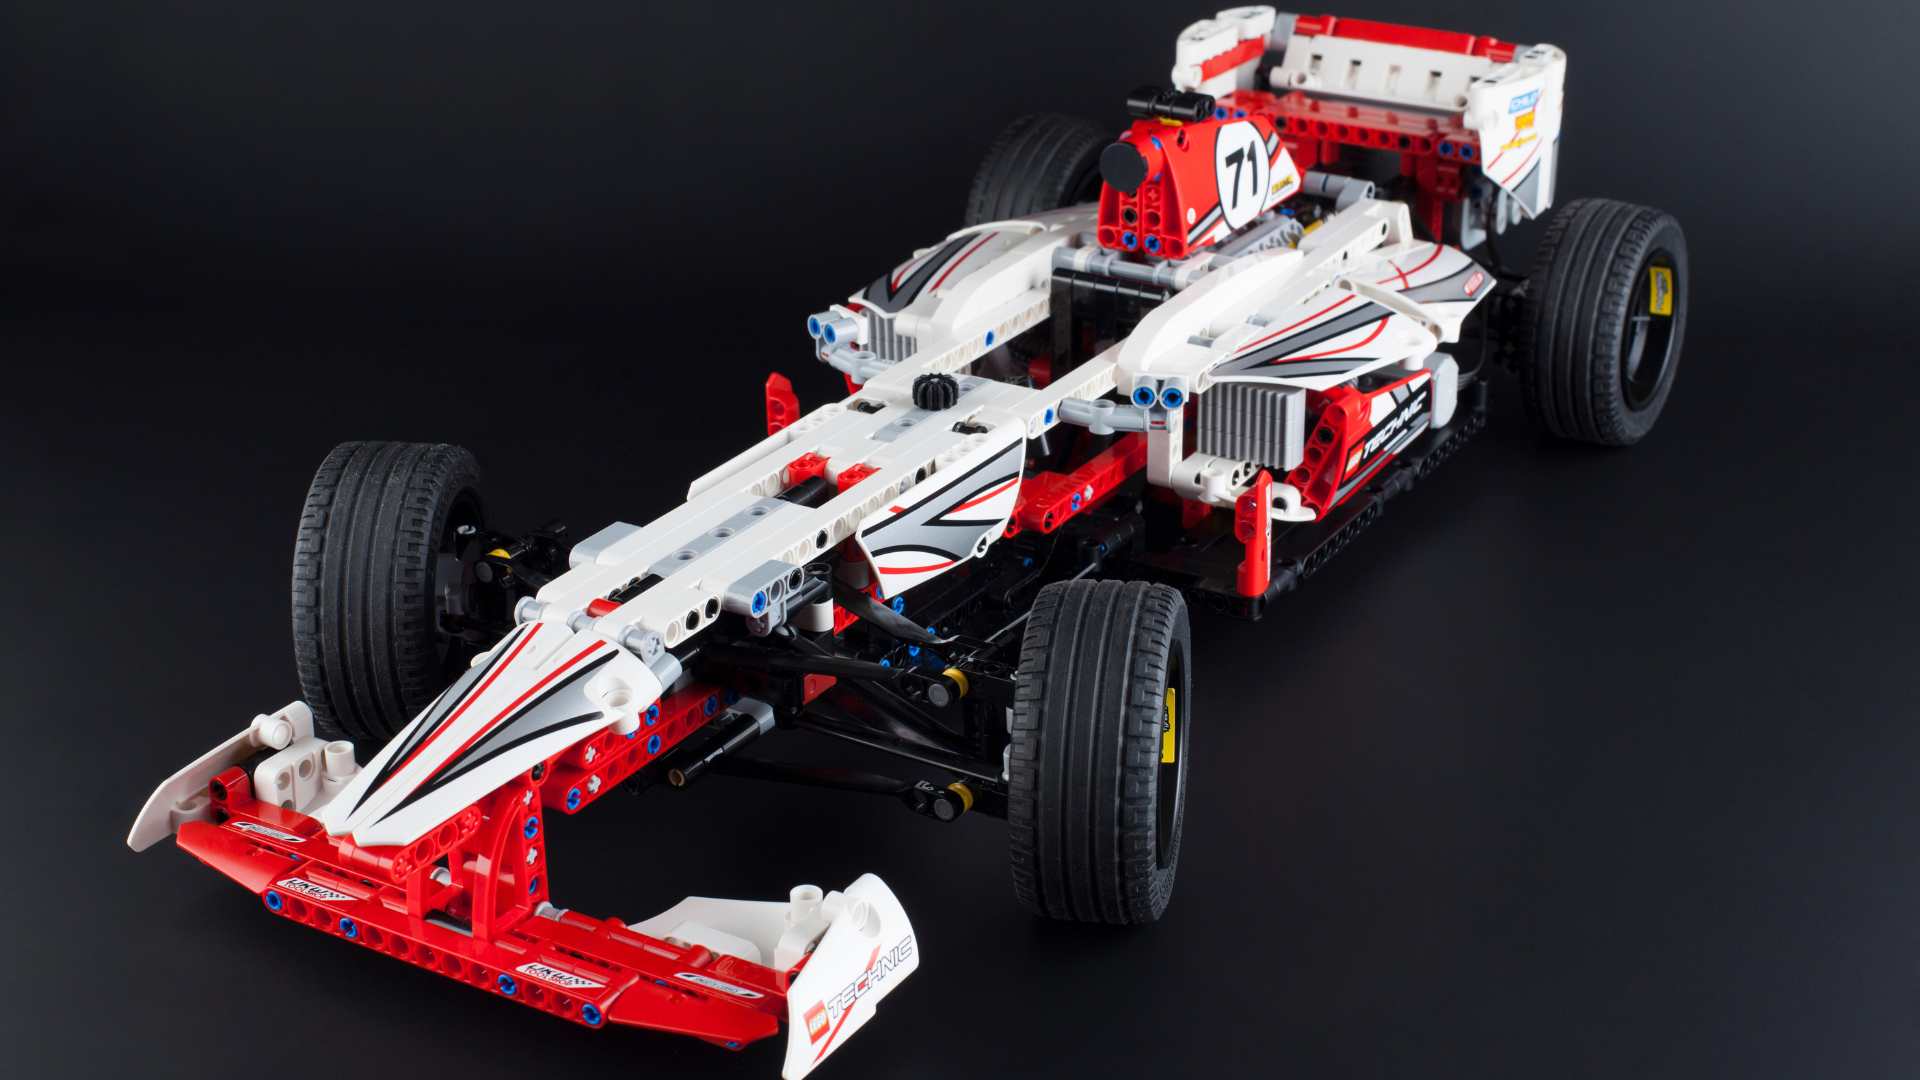 dække over Gør gulvet rent Menneskelige race The best Lego Technic sets 2023 for all budgets | T3